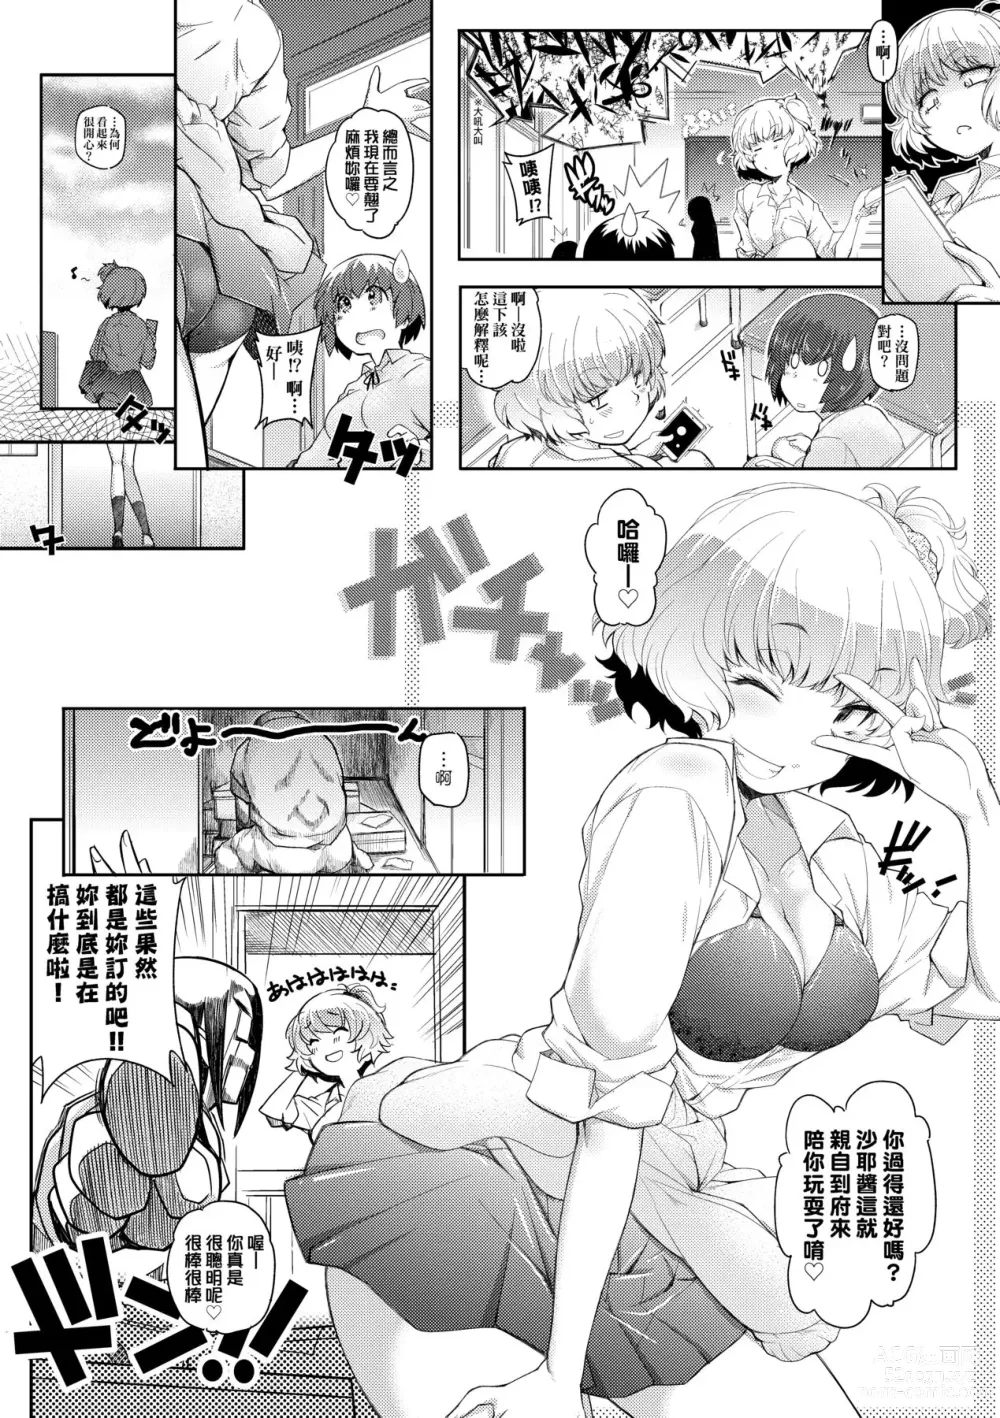 Page 30 of manga 隔壁正在H真是讓人羨慕呀。 (decensored)